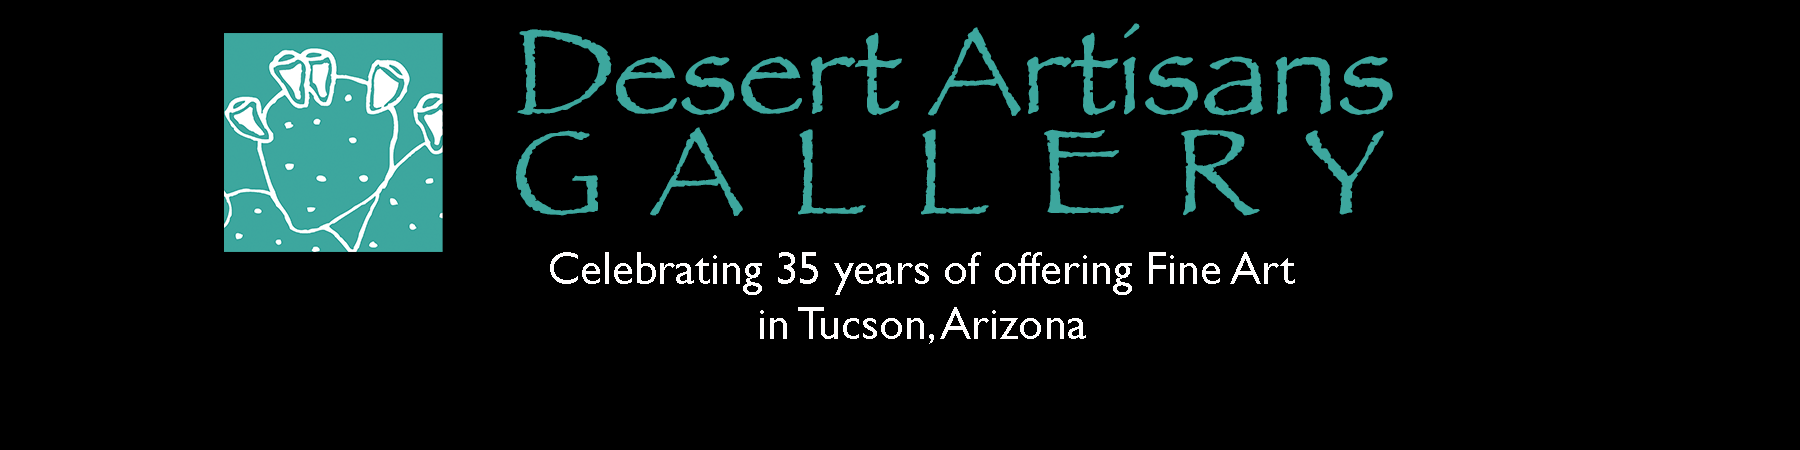 Desert Artisans Gallery